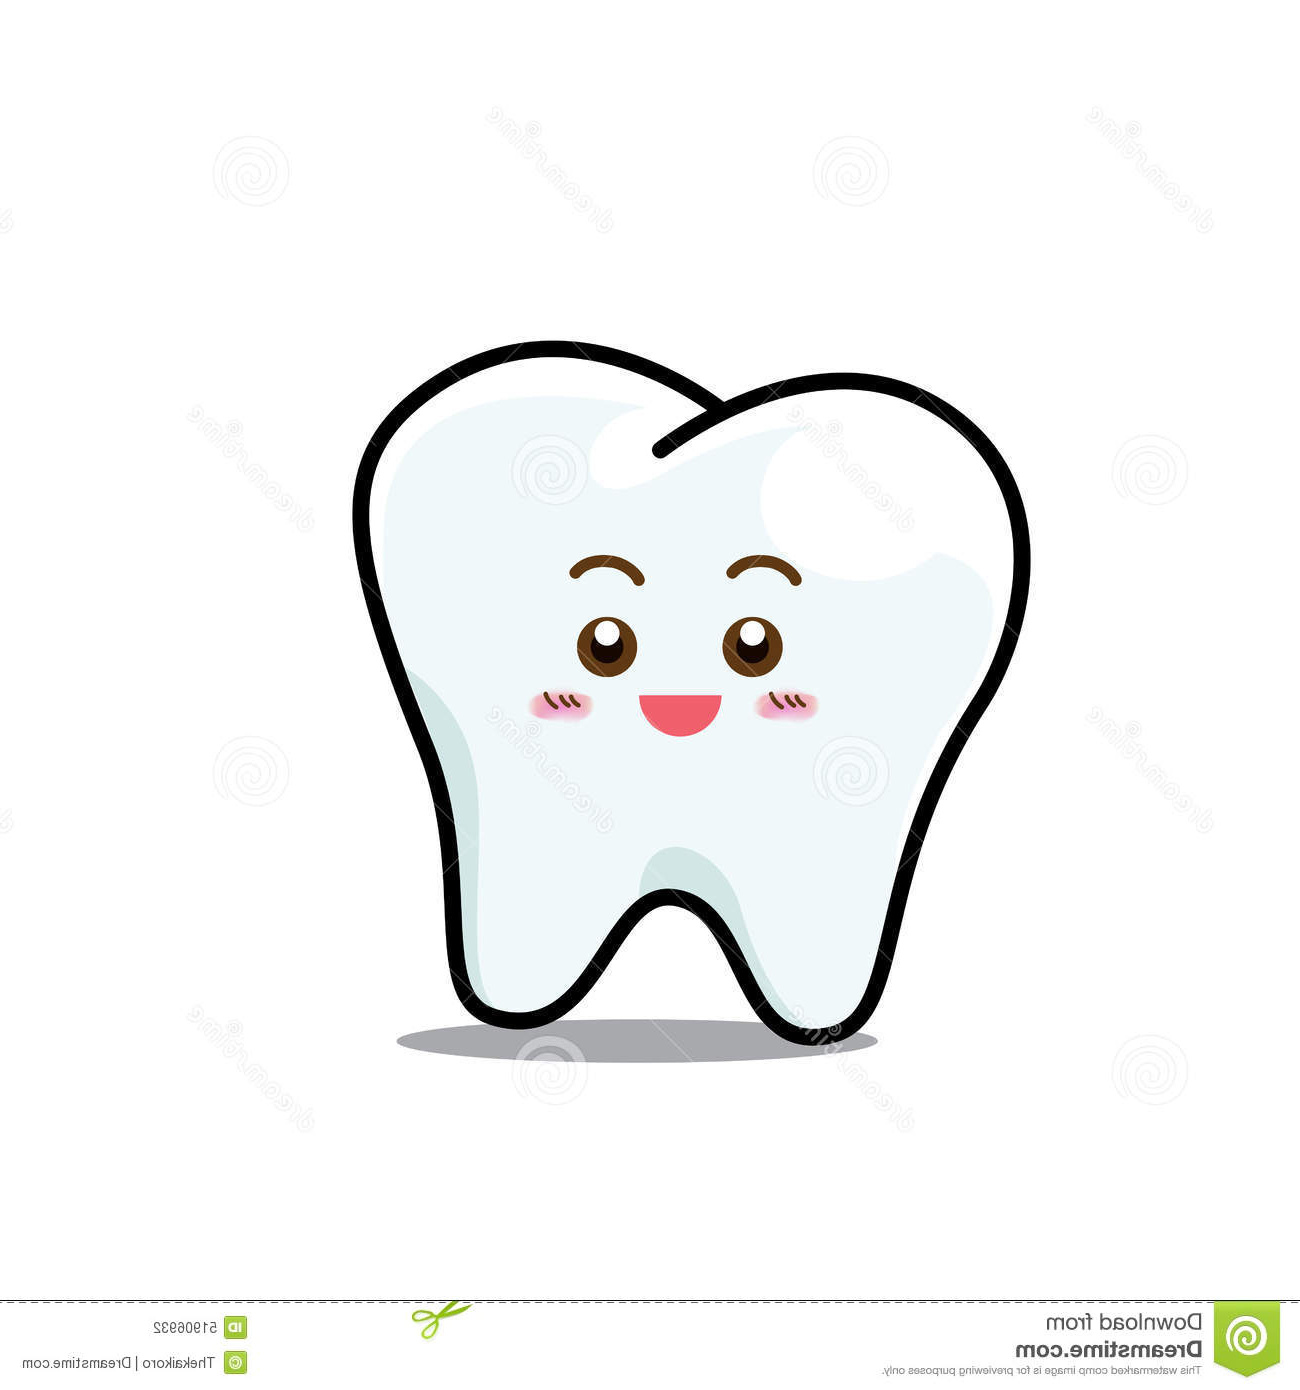 illustration stock personnage de dessin anim dentaire heureux de mascotte de dent de sourire d isolement sur w image